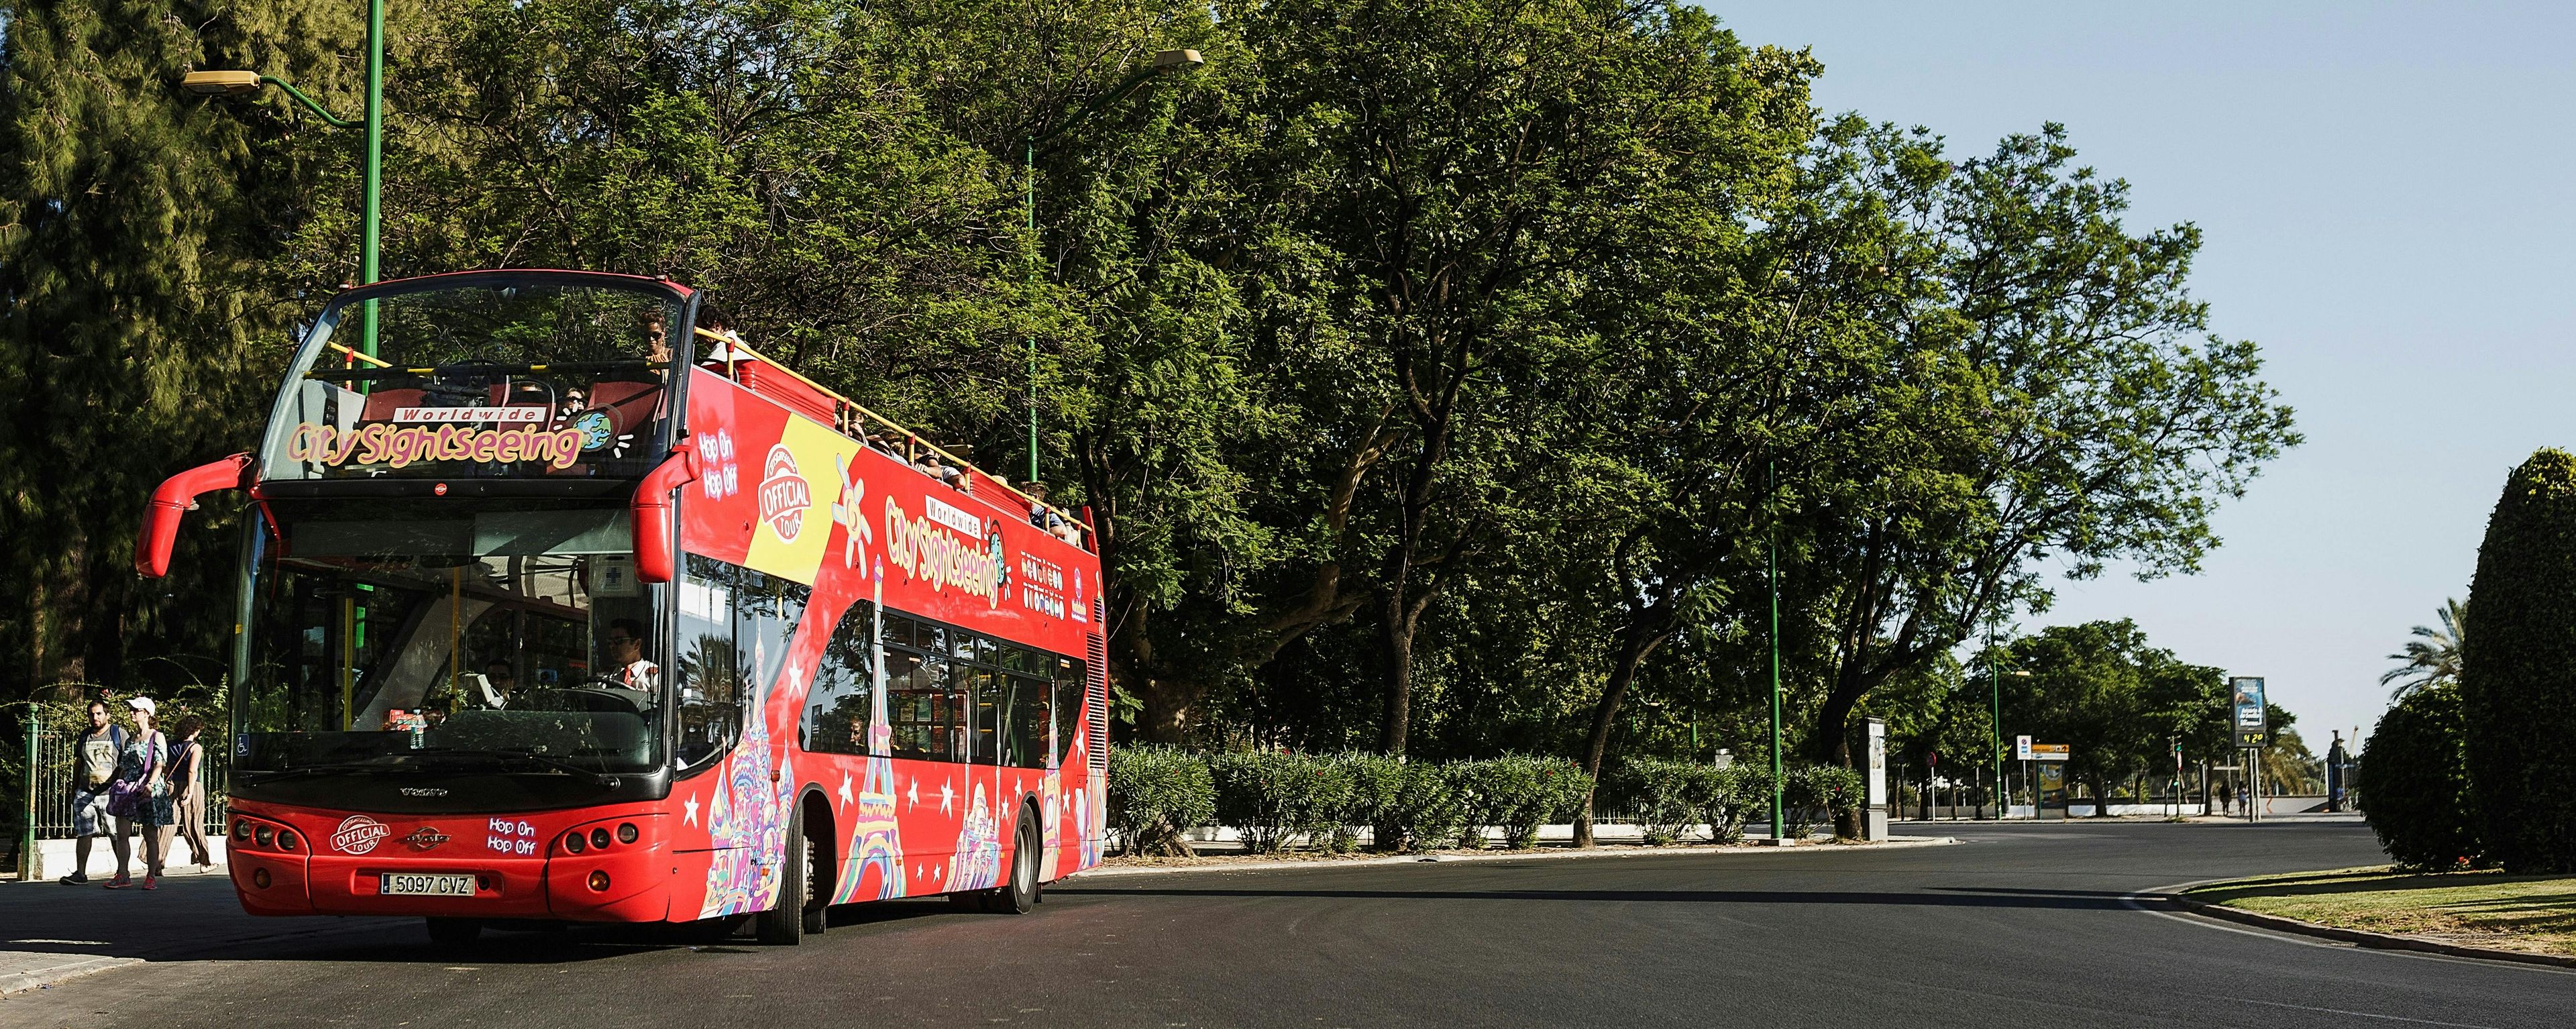 Imagen del tour: Recorrido en bus turístico de City Sightseeing por Benalmádena